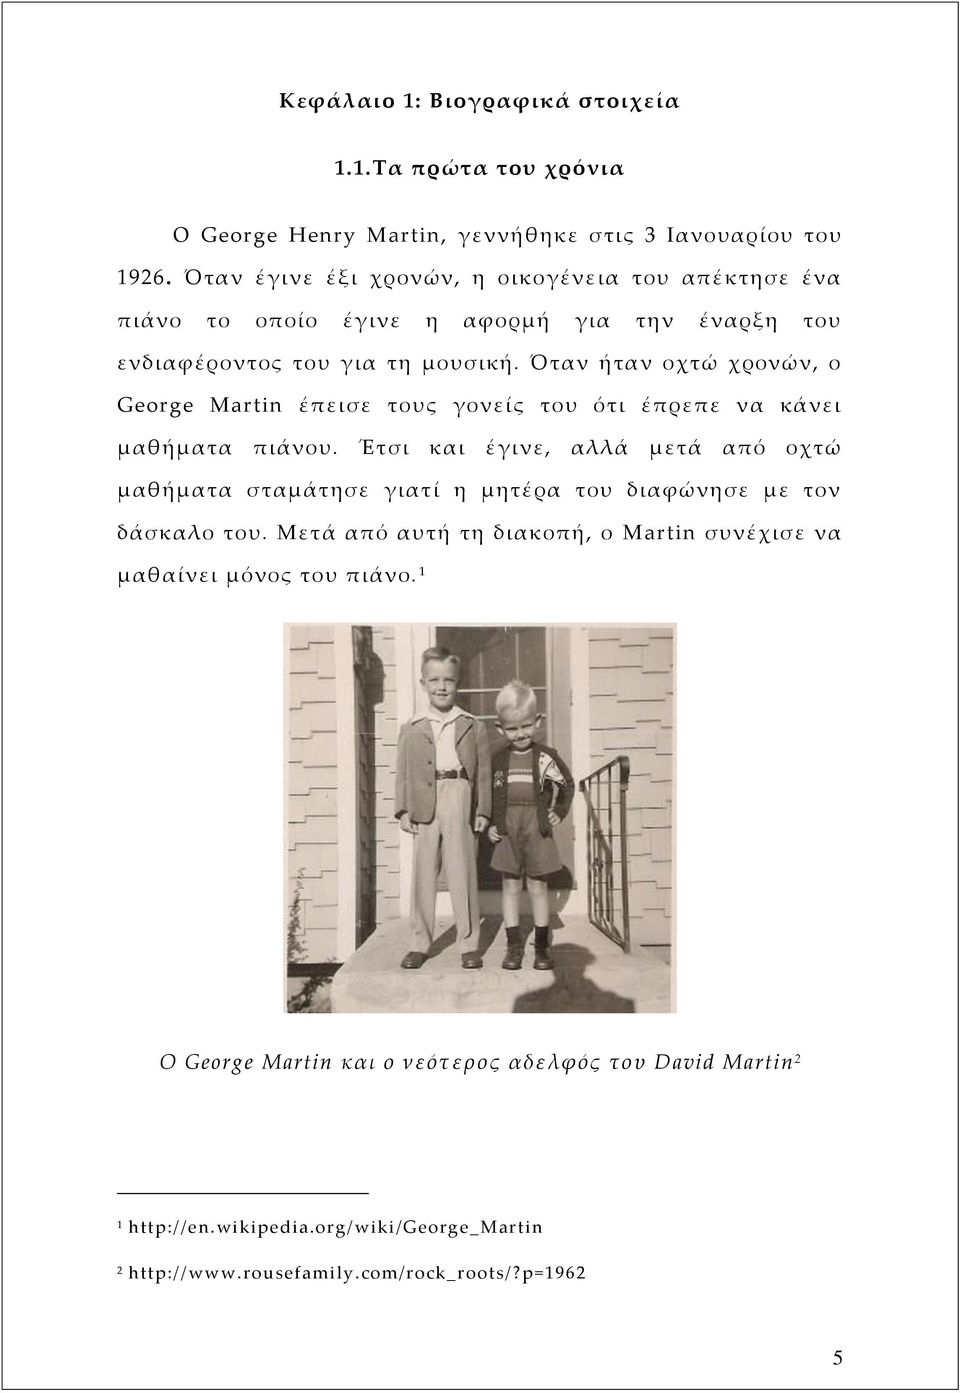 Όταν ήταν οχτώ χρονών, ο George Martin έπεισε τους γονείς του ότι έπρεπε να κάνει μαθήματα πιάνου.